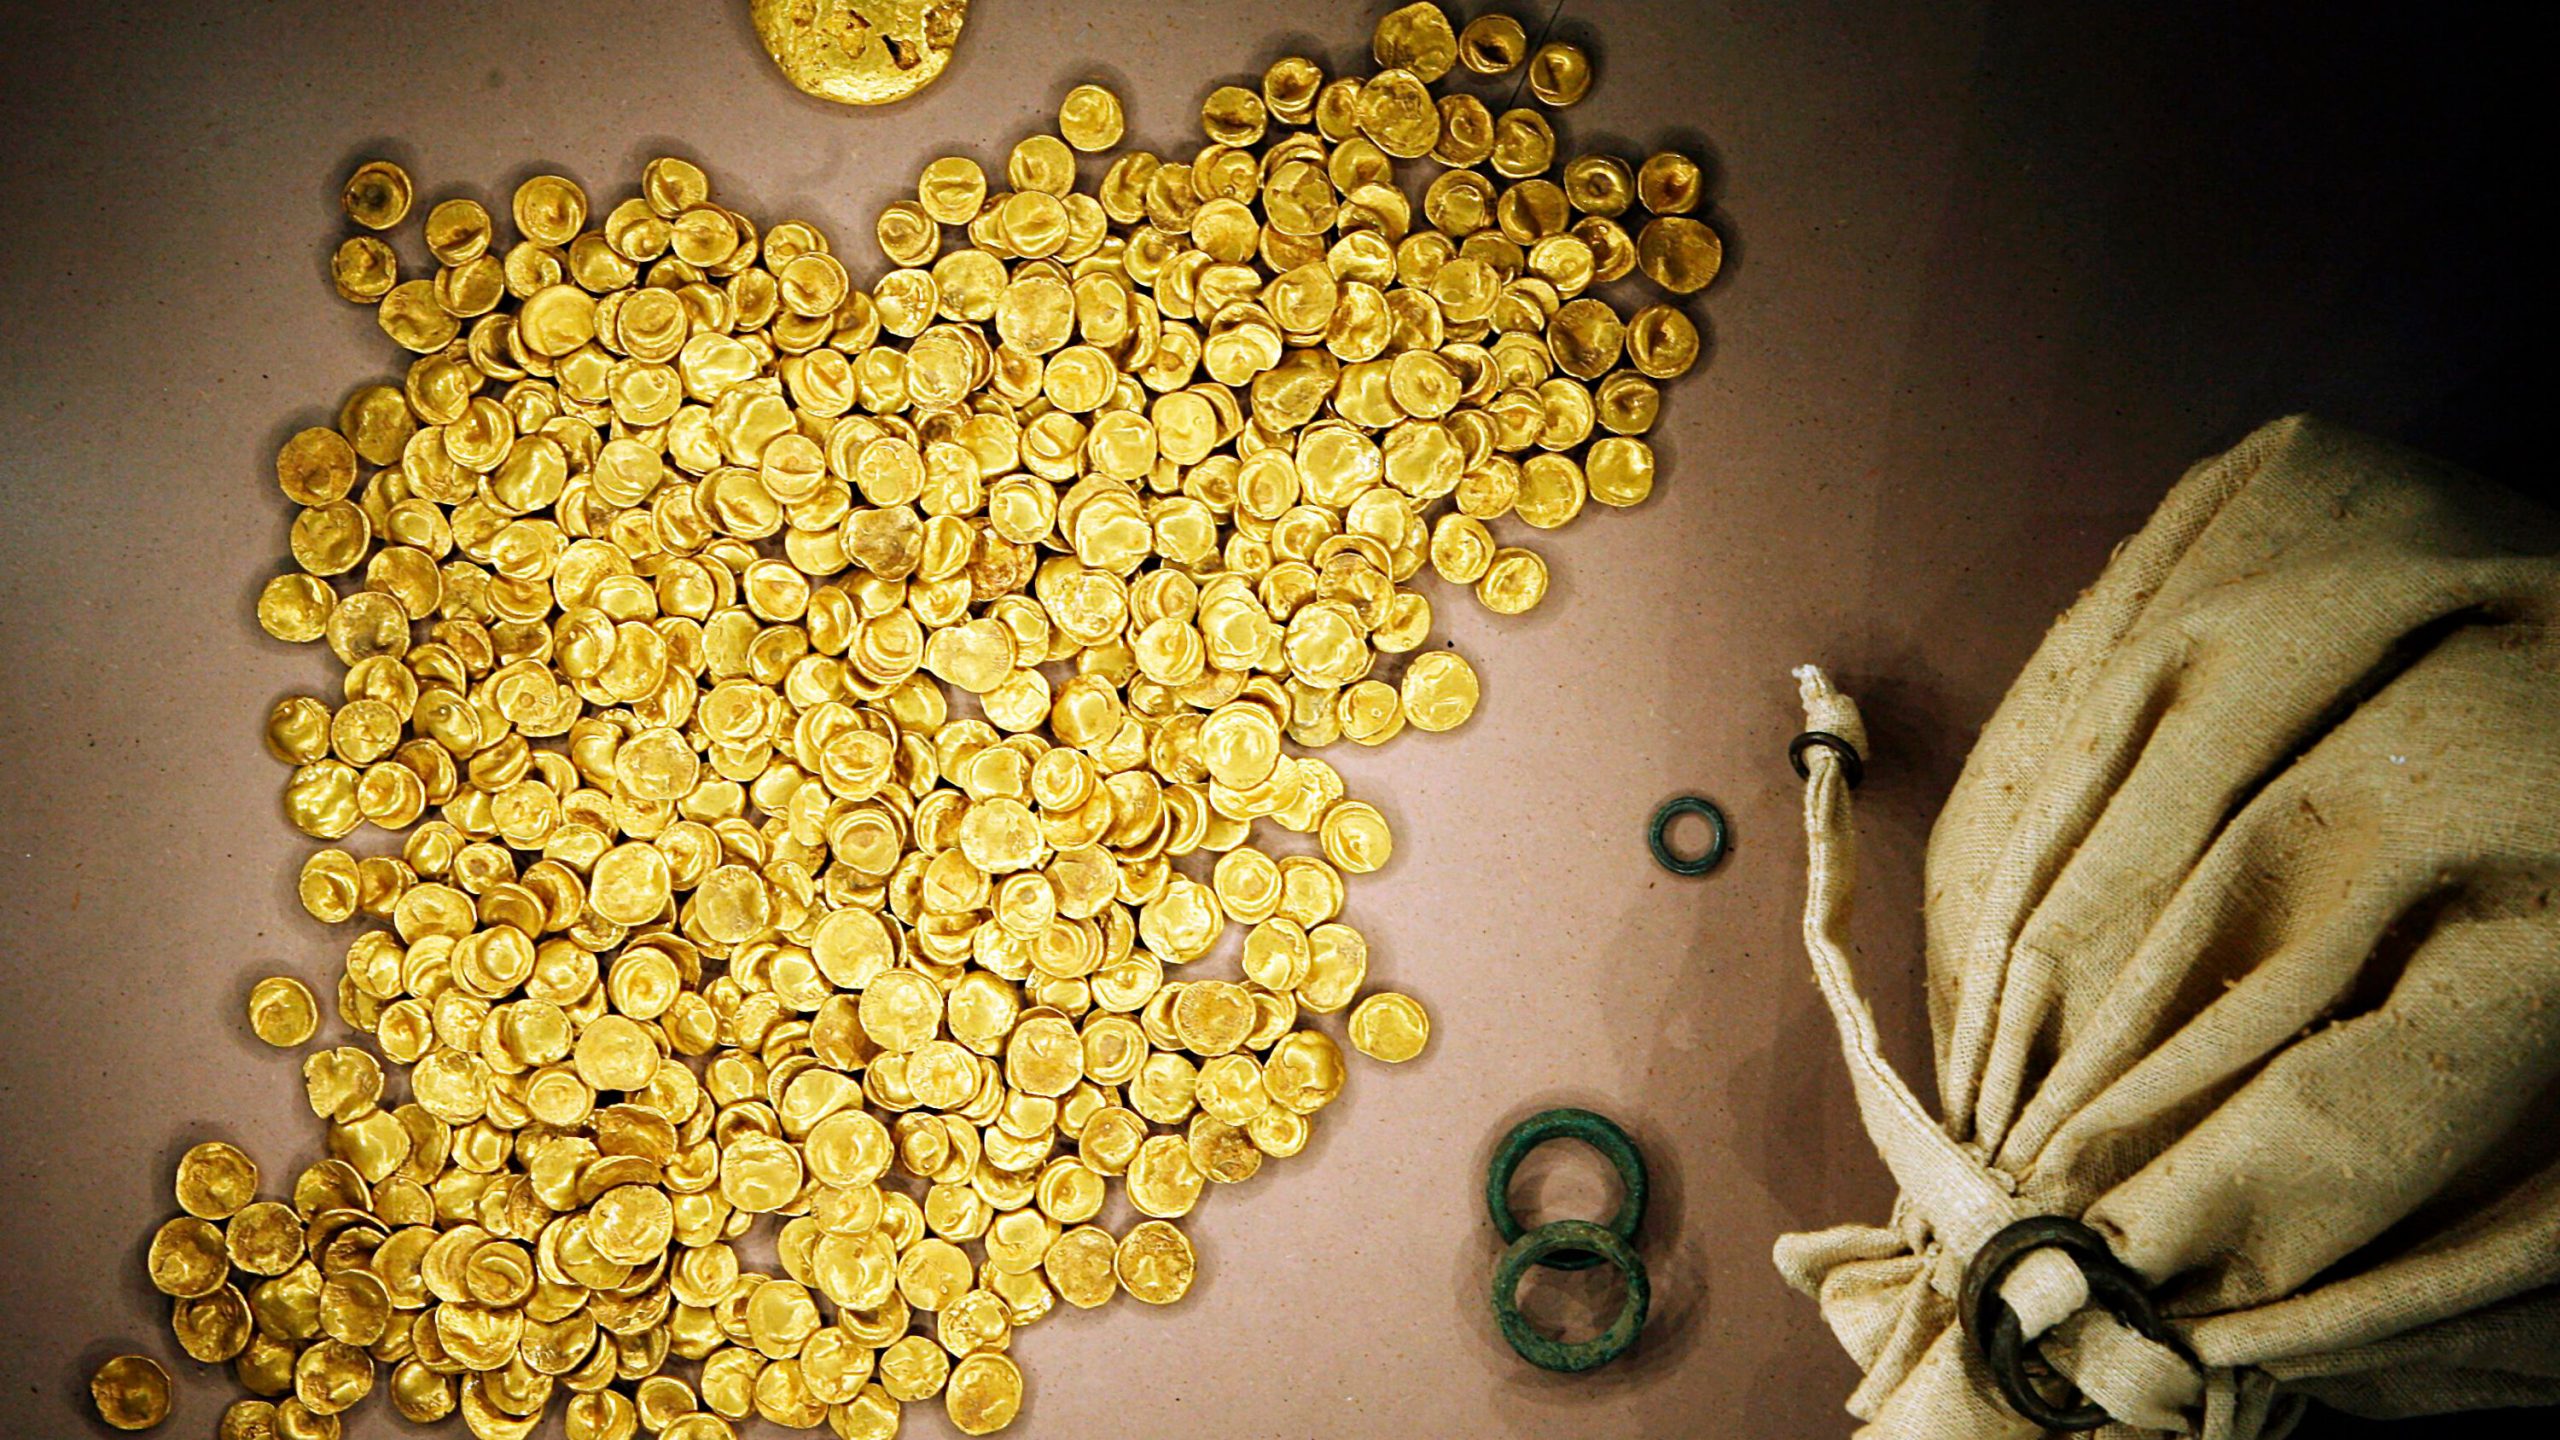  اسرع عملية سطو خلال 9 دقائق فقط! سرقة كنز من الذهب من متحف في ألمانيا وقيمته خيالية